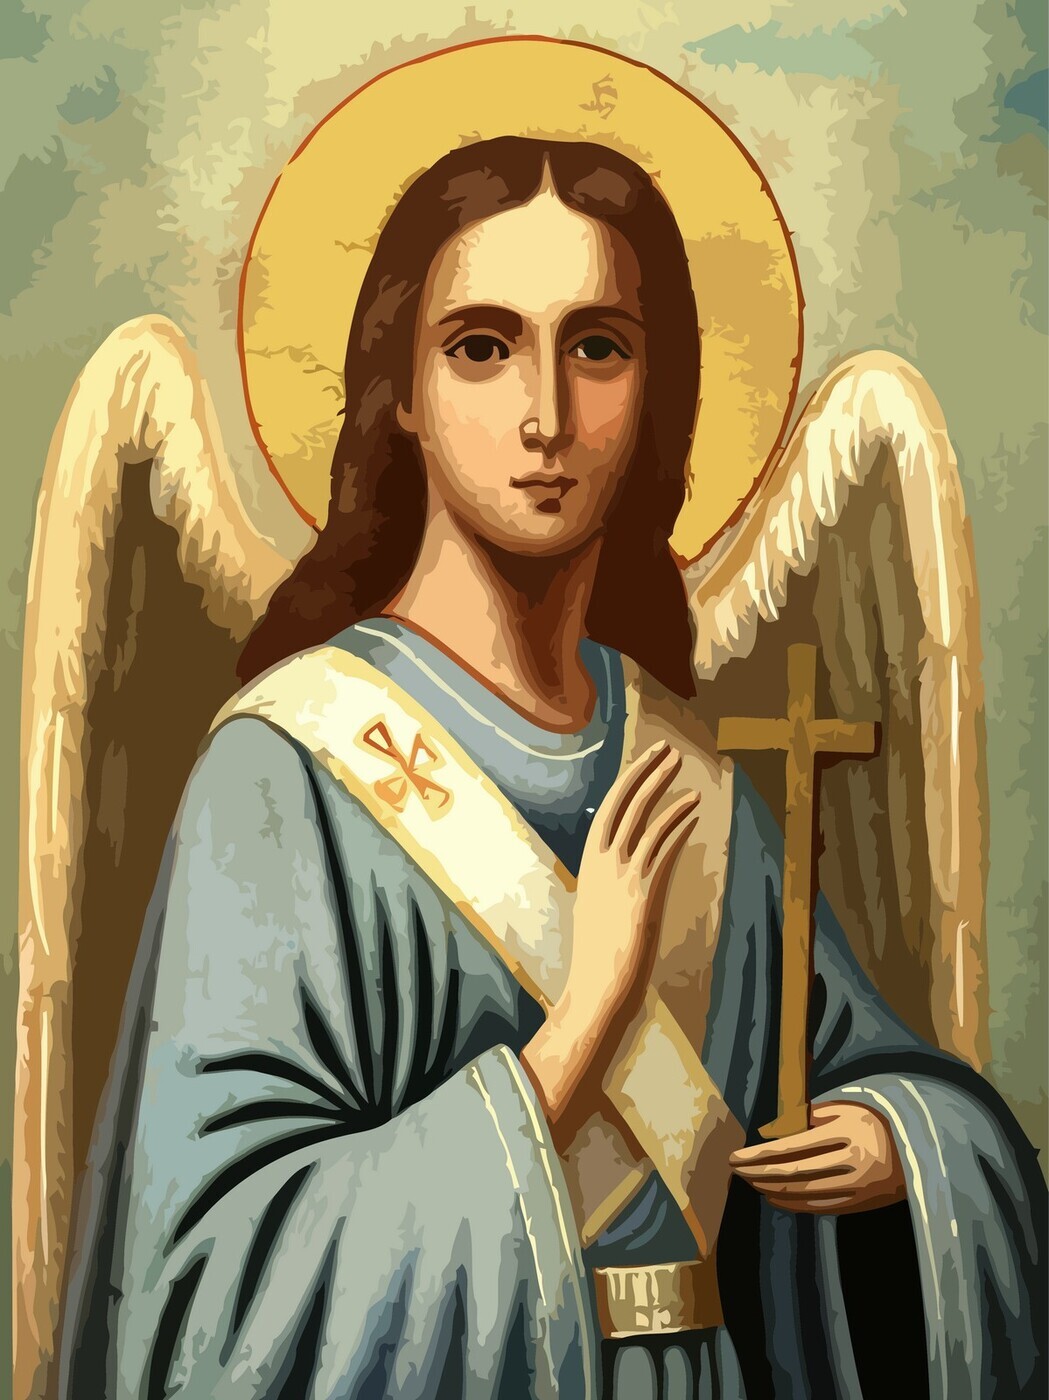 Ангел хранитель икона православная